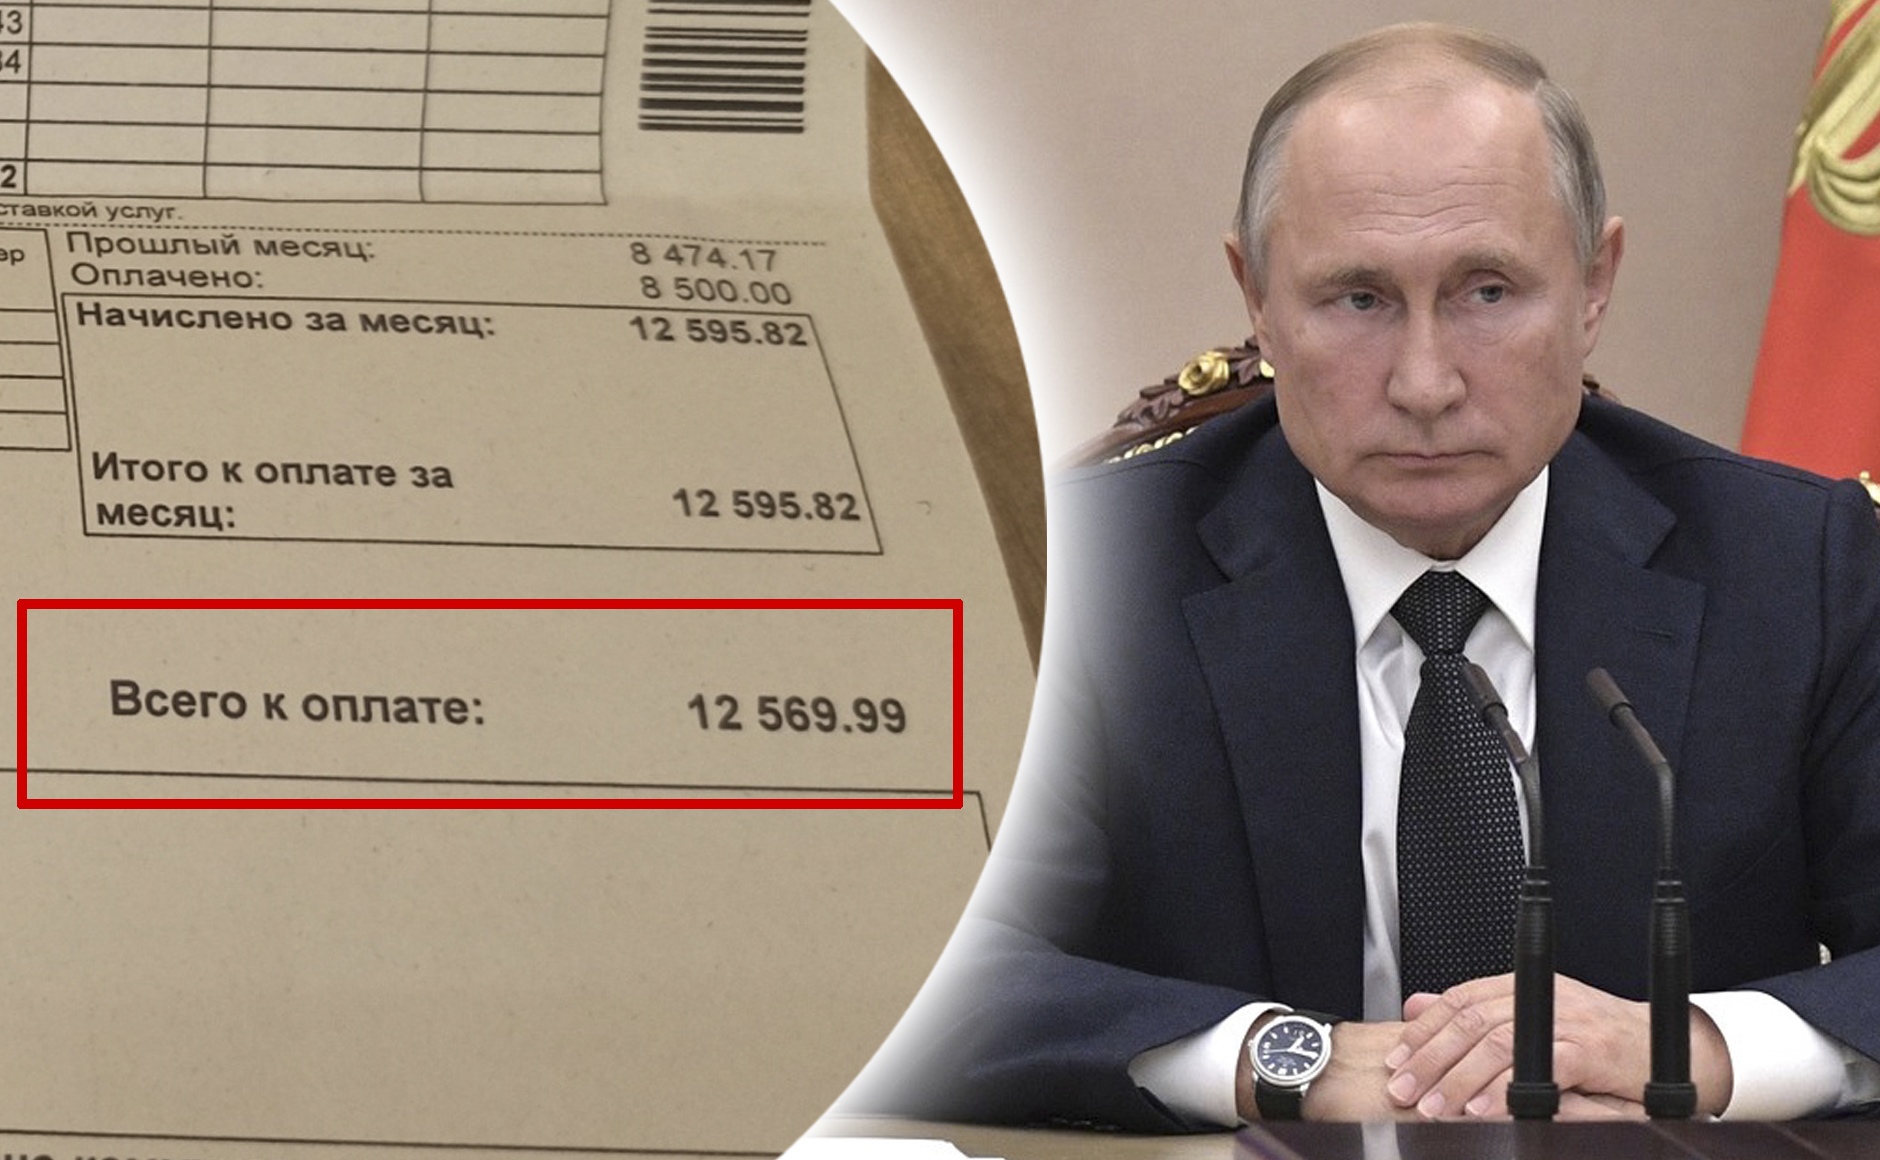  У меня зарплата меньше!: ярославцы обратились к Путину из-за диких коммунальных платежей